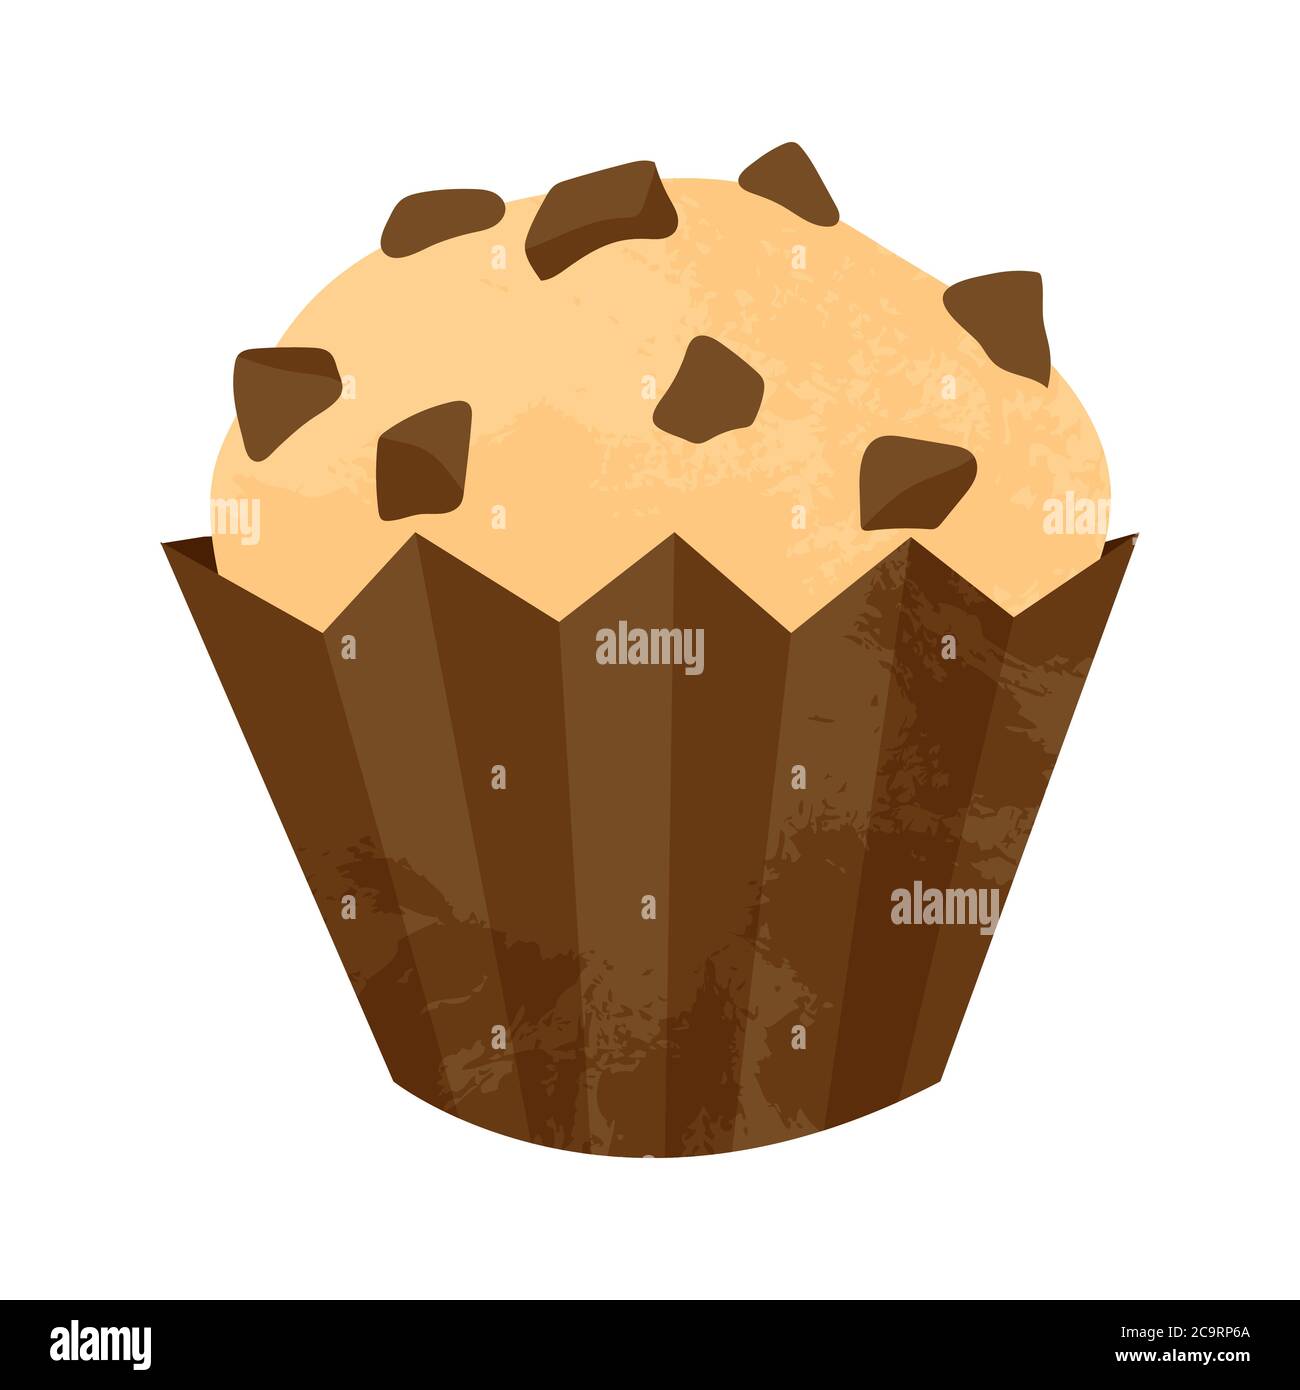 Einhandgezogener Cupcake oder Muffin mit Schokolade und Karamell. Vektor-Cartoon-Illustration in flachem Design. Element für Grußkarten, Poster, Stick Stock Vektor